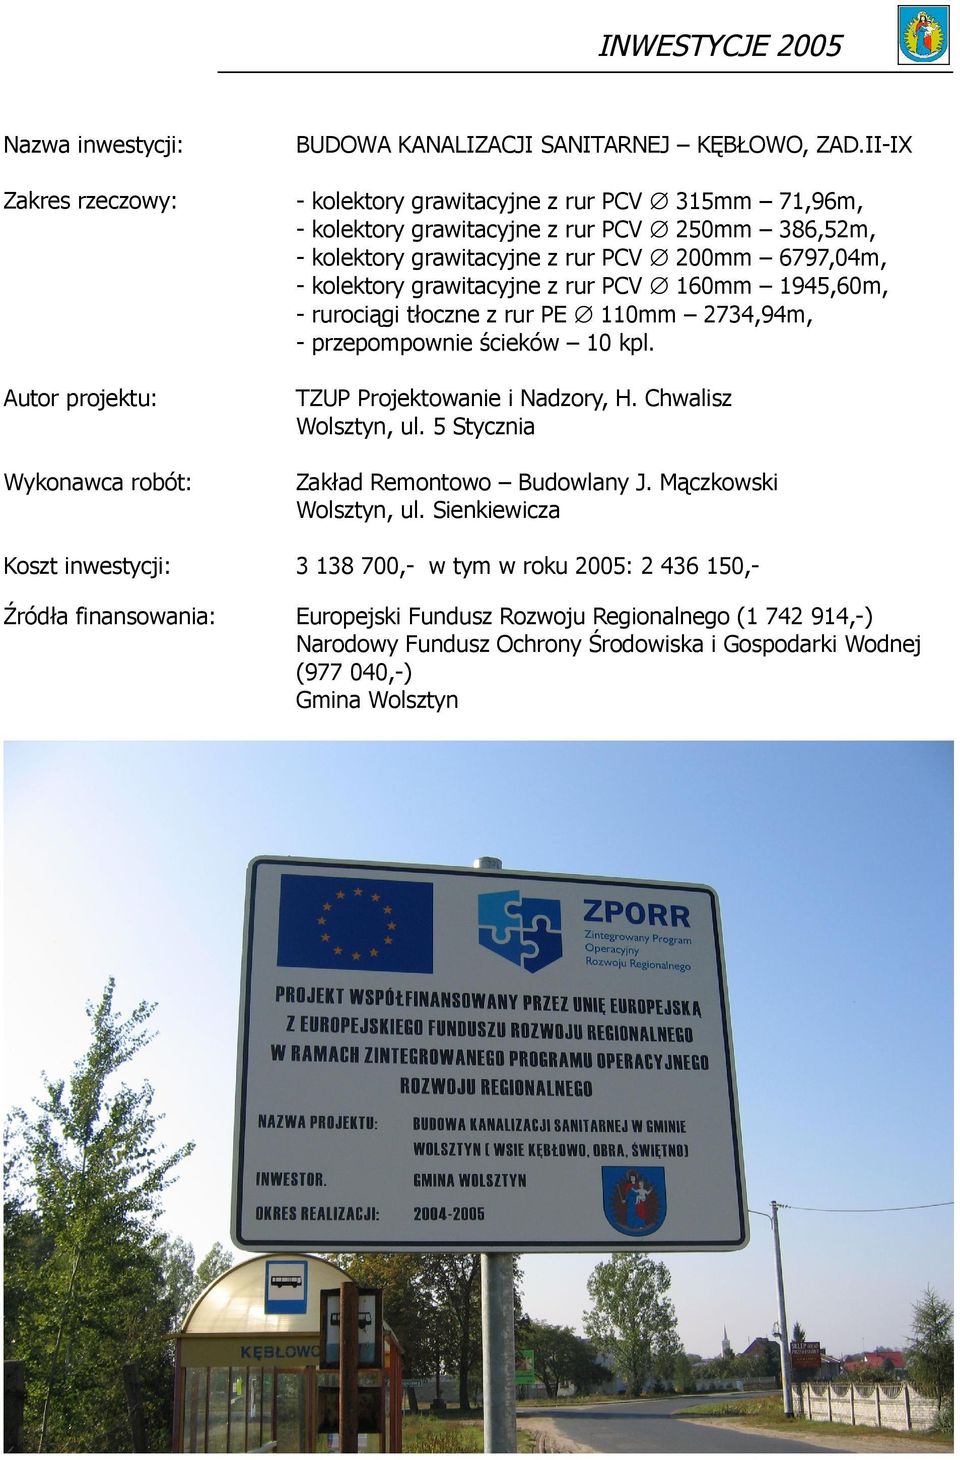 Sienkiewicza 3 138 700,- w tym w roku 2005: 2 436 150,- Europejski Fundusz Rozwoju Regionalnego (1 742 914,-) Narodowy Fundusz Ochrony Środowiska i